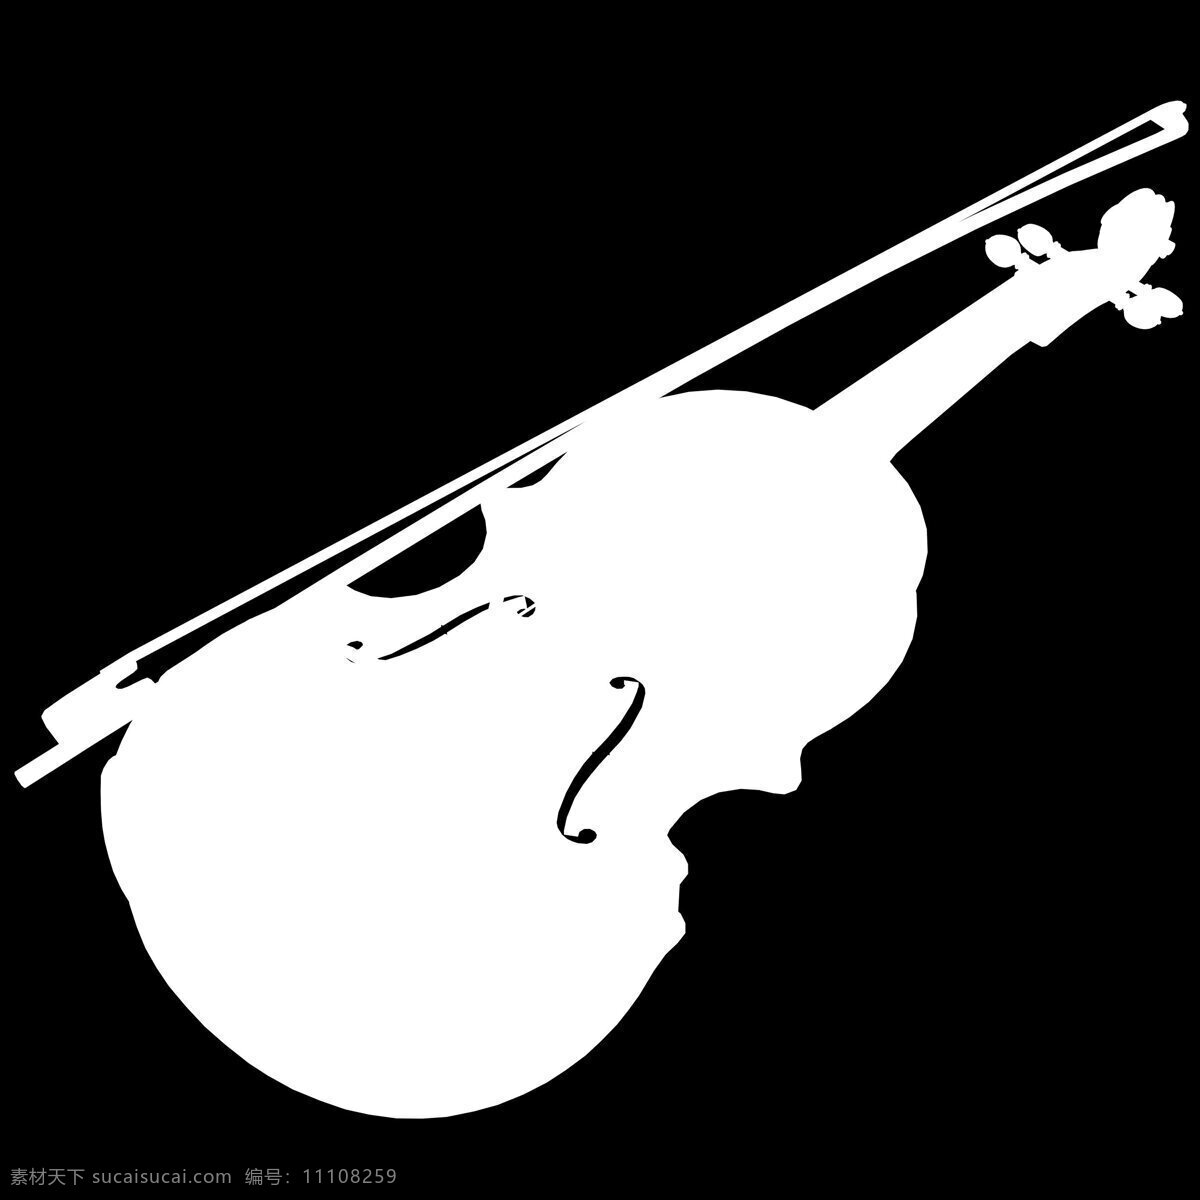 高档 小提琴 三维 模型 小提琴模型 三维模型